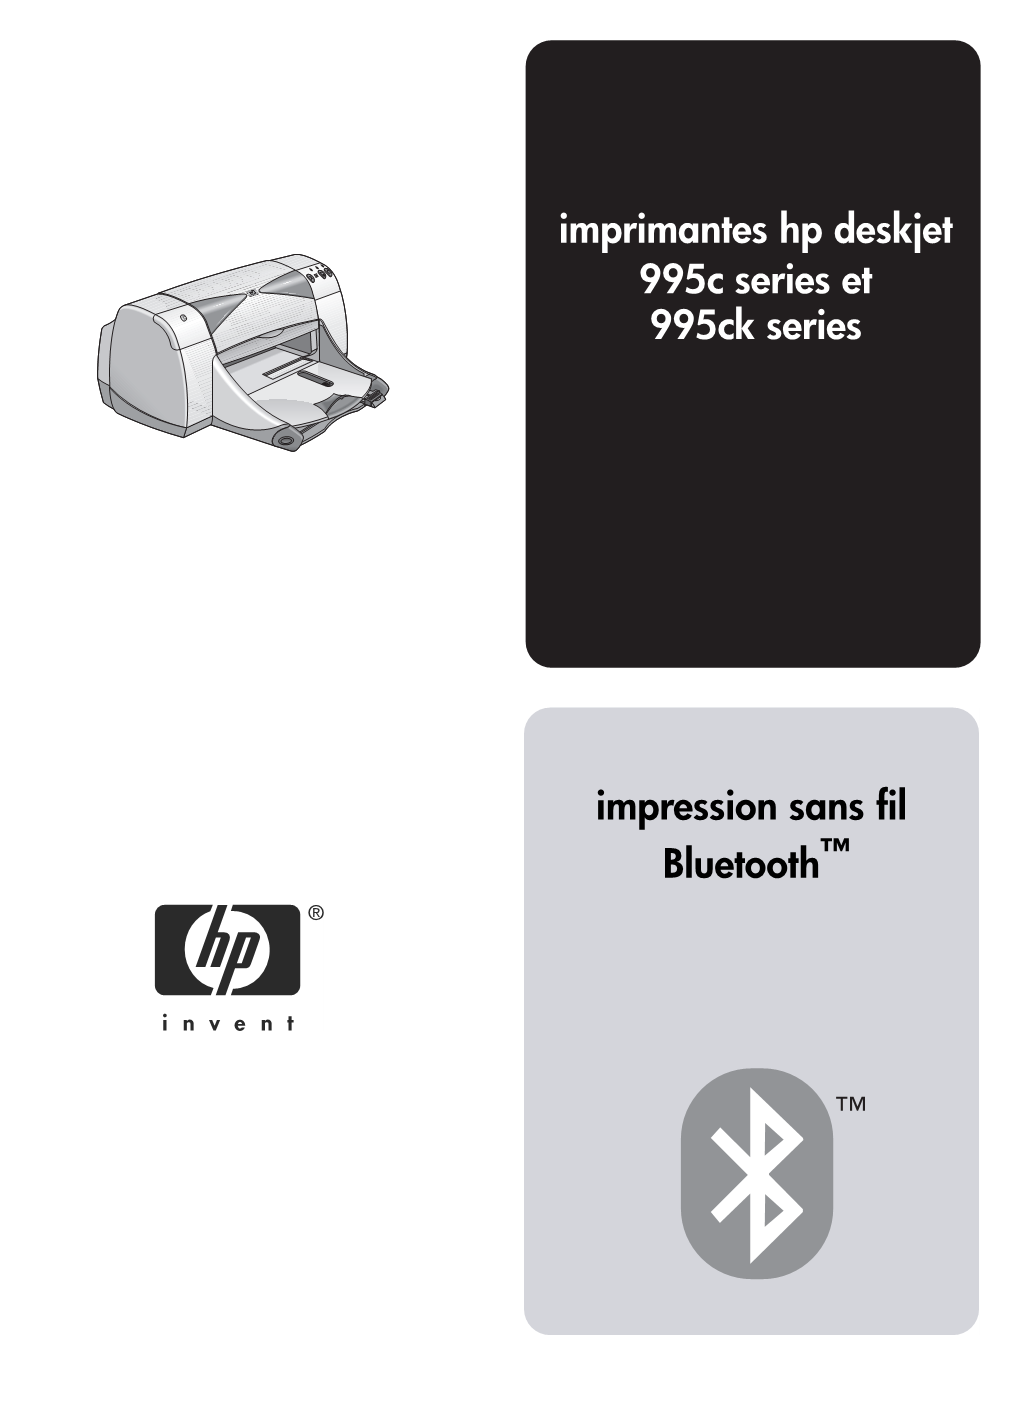 Imprimante Hp Deskjet 995C Series, Procédez Comme Suit : 1